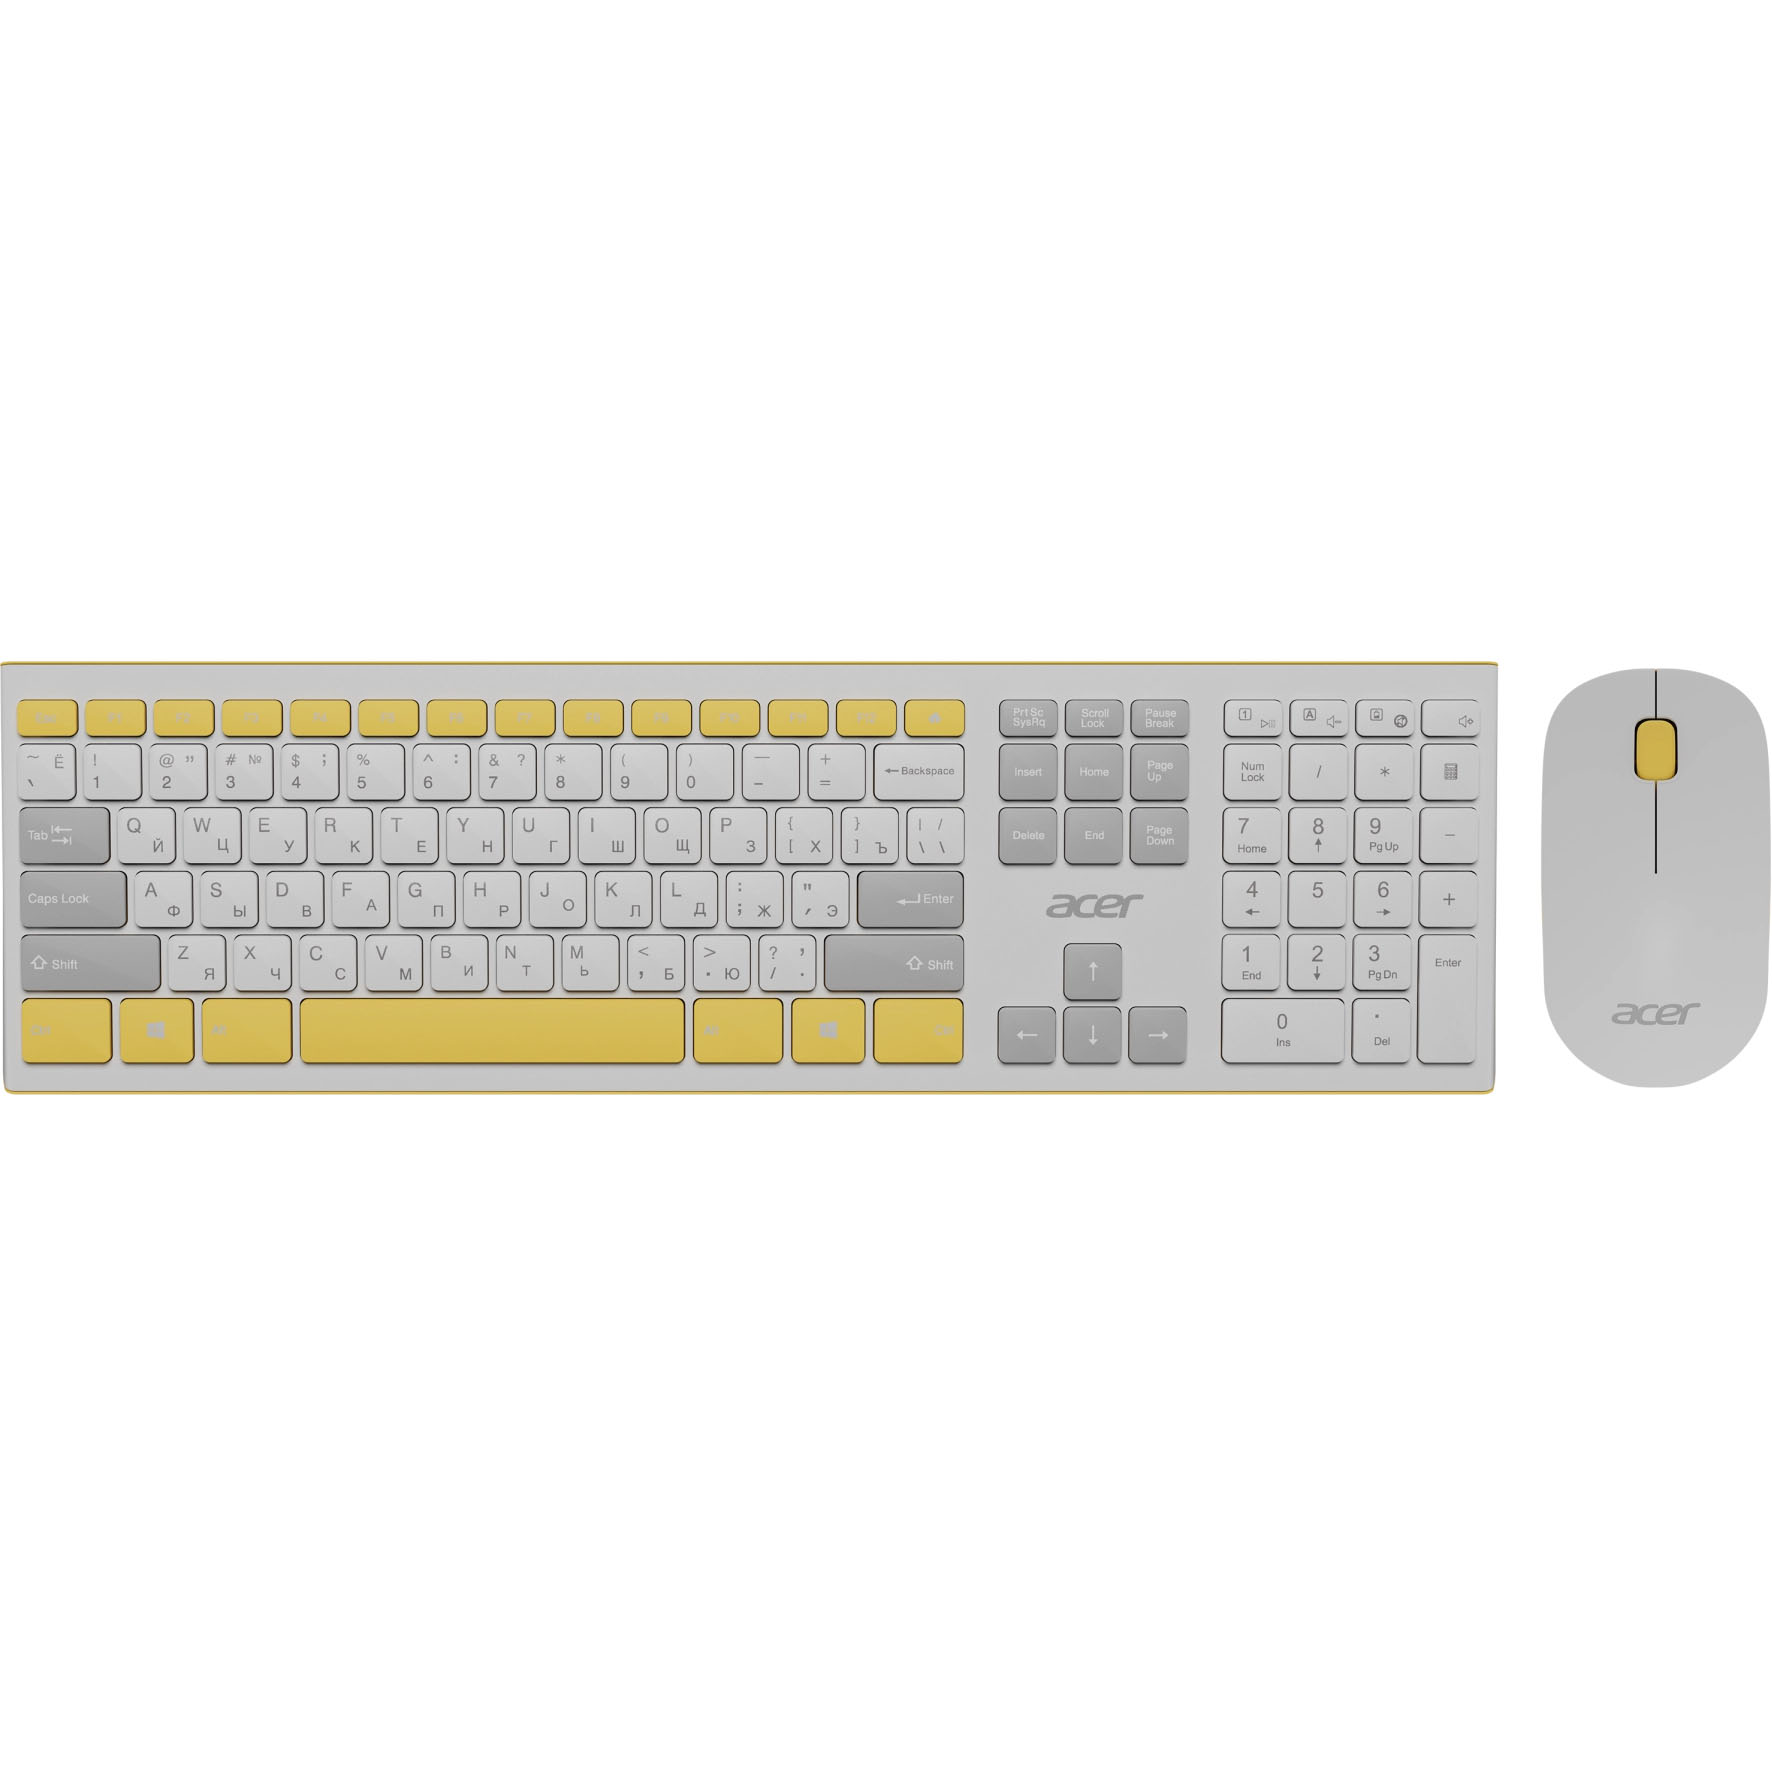 Комплект клавиатуры и мыши Acer OCC200 белый, желтый клавиатура мышь acer occ200 белый желтый zl accee 002